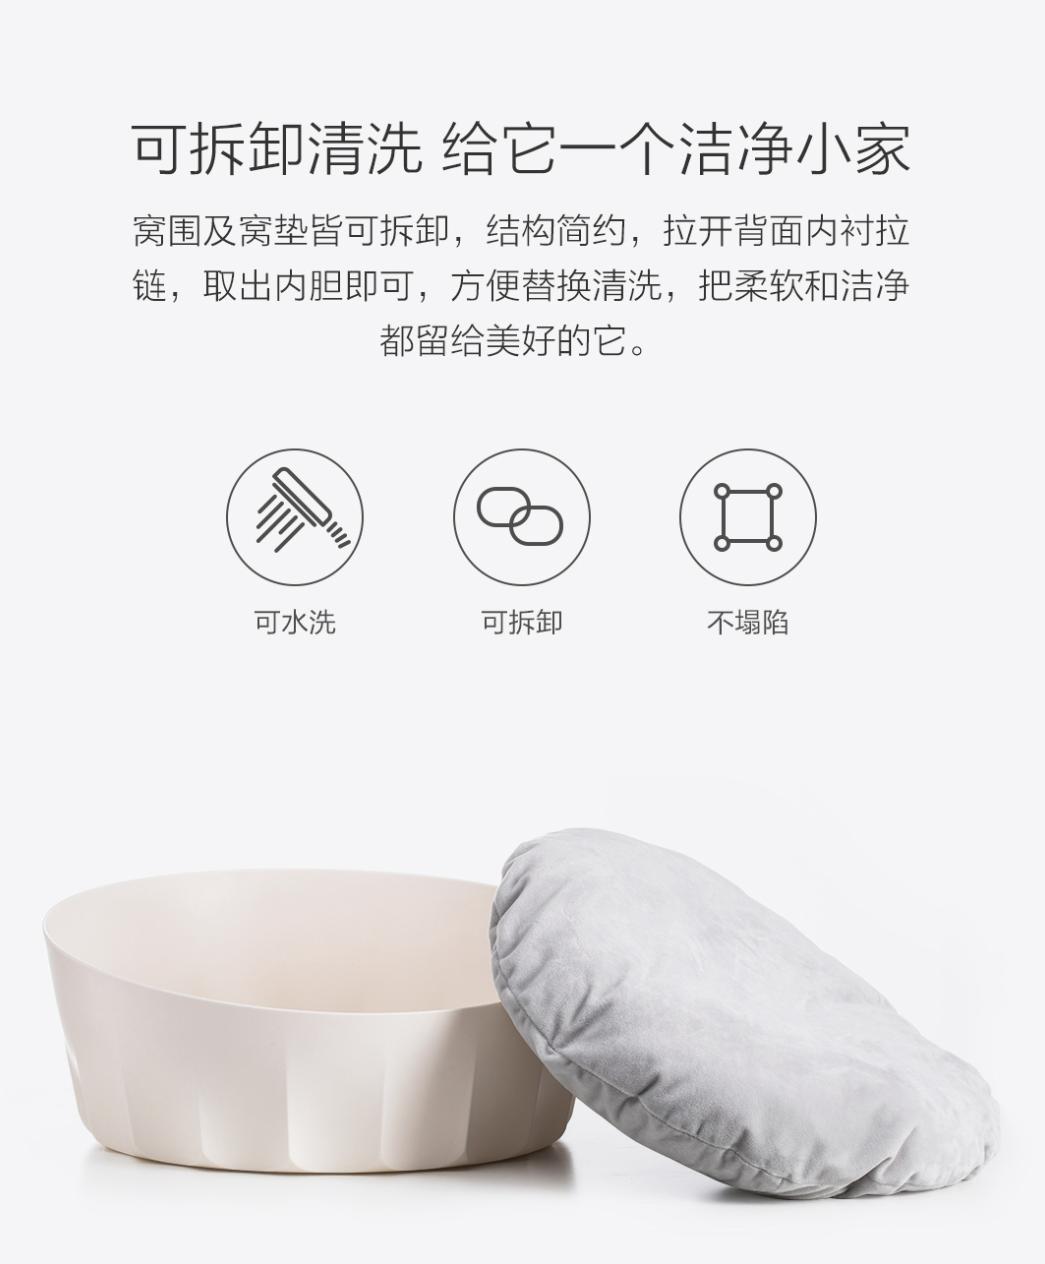 Xiaomi любит котиков. Продаёт кровать для животных